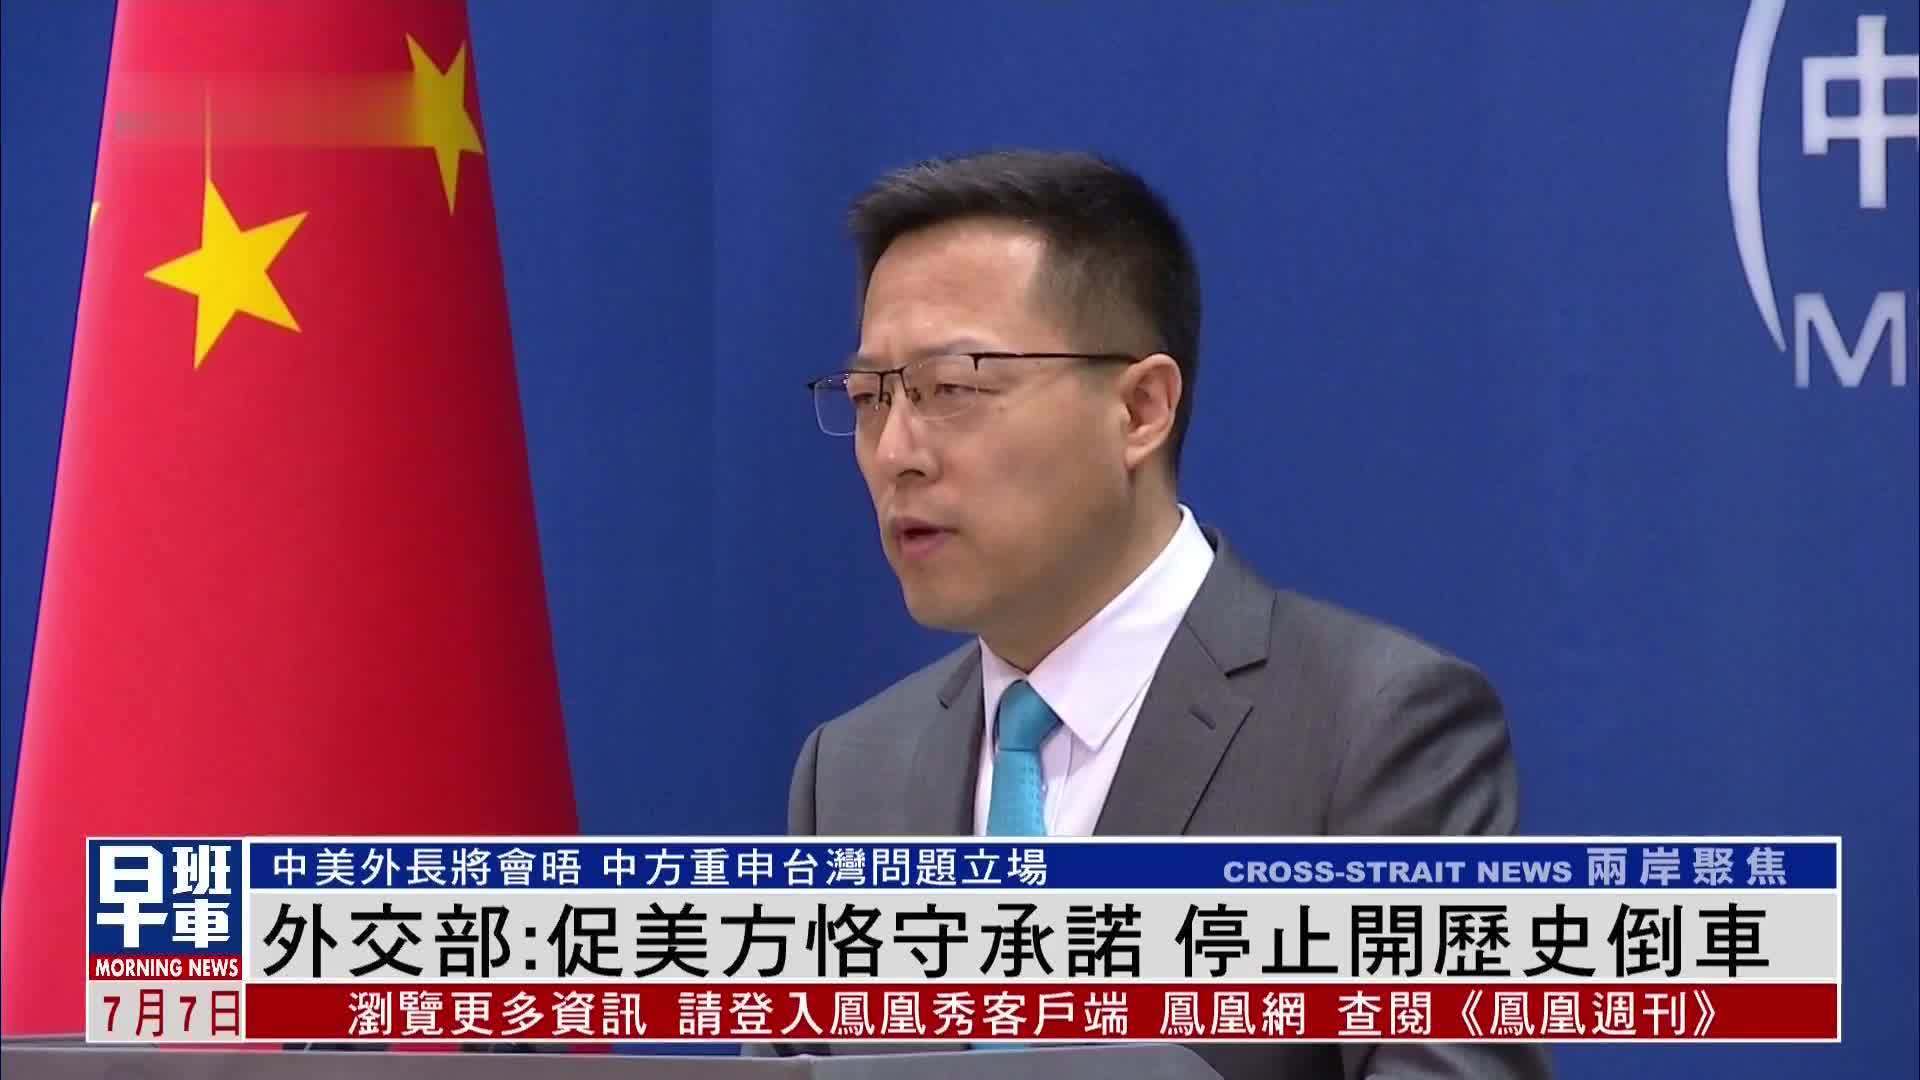 王毅在“对话合作，管控分歧——推动中美关系重回正轨”蓝厅论坛上发表致辞